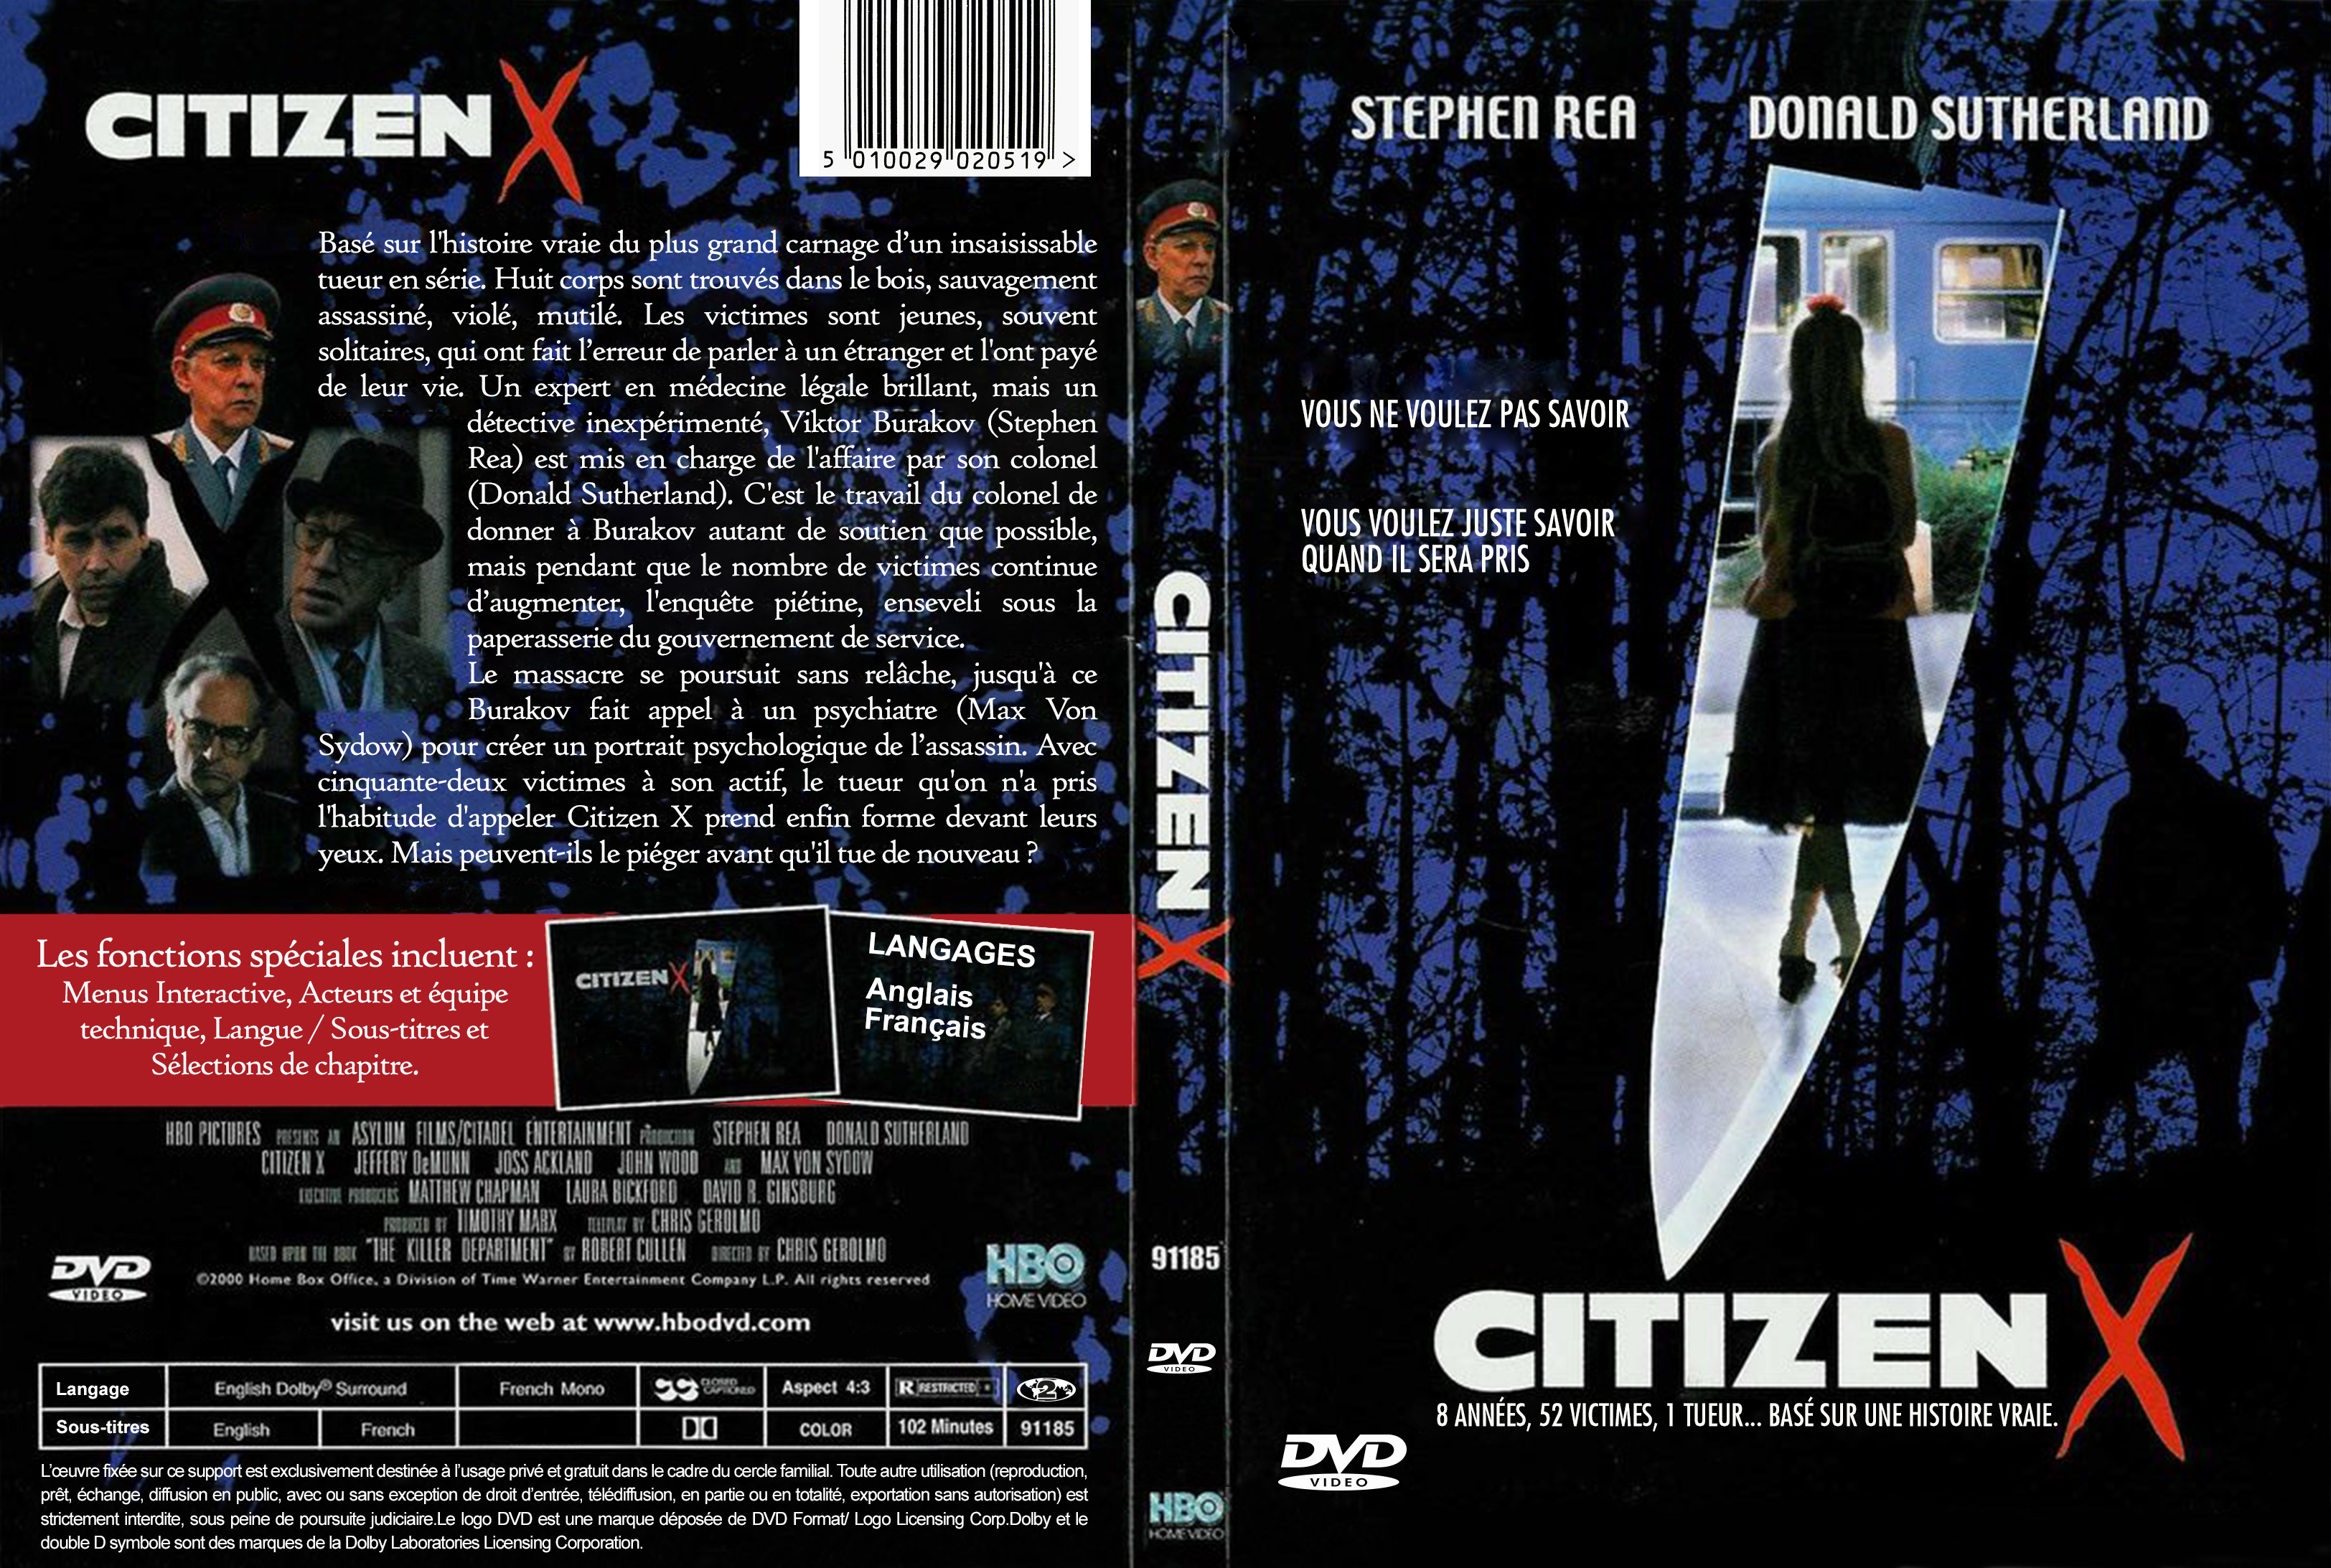 Jaquette DVD Citizen X custom